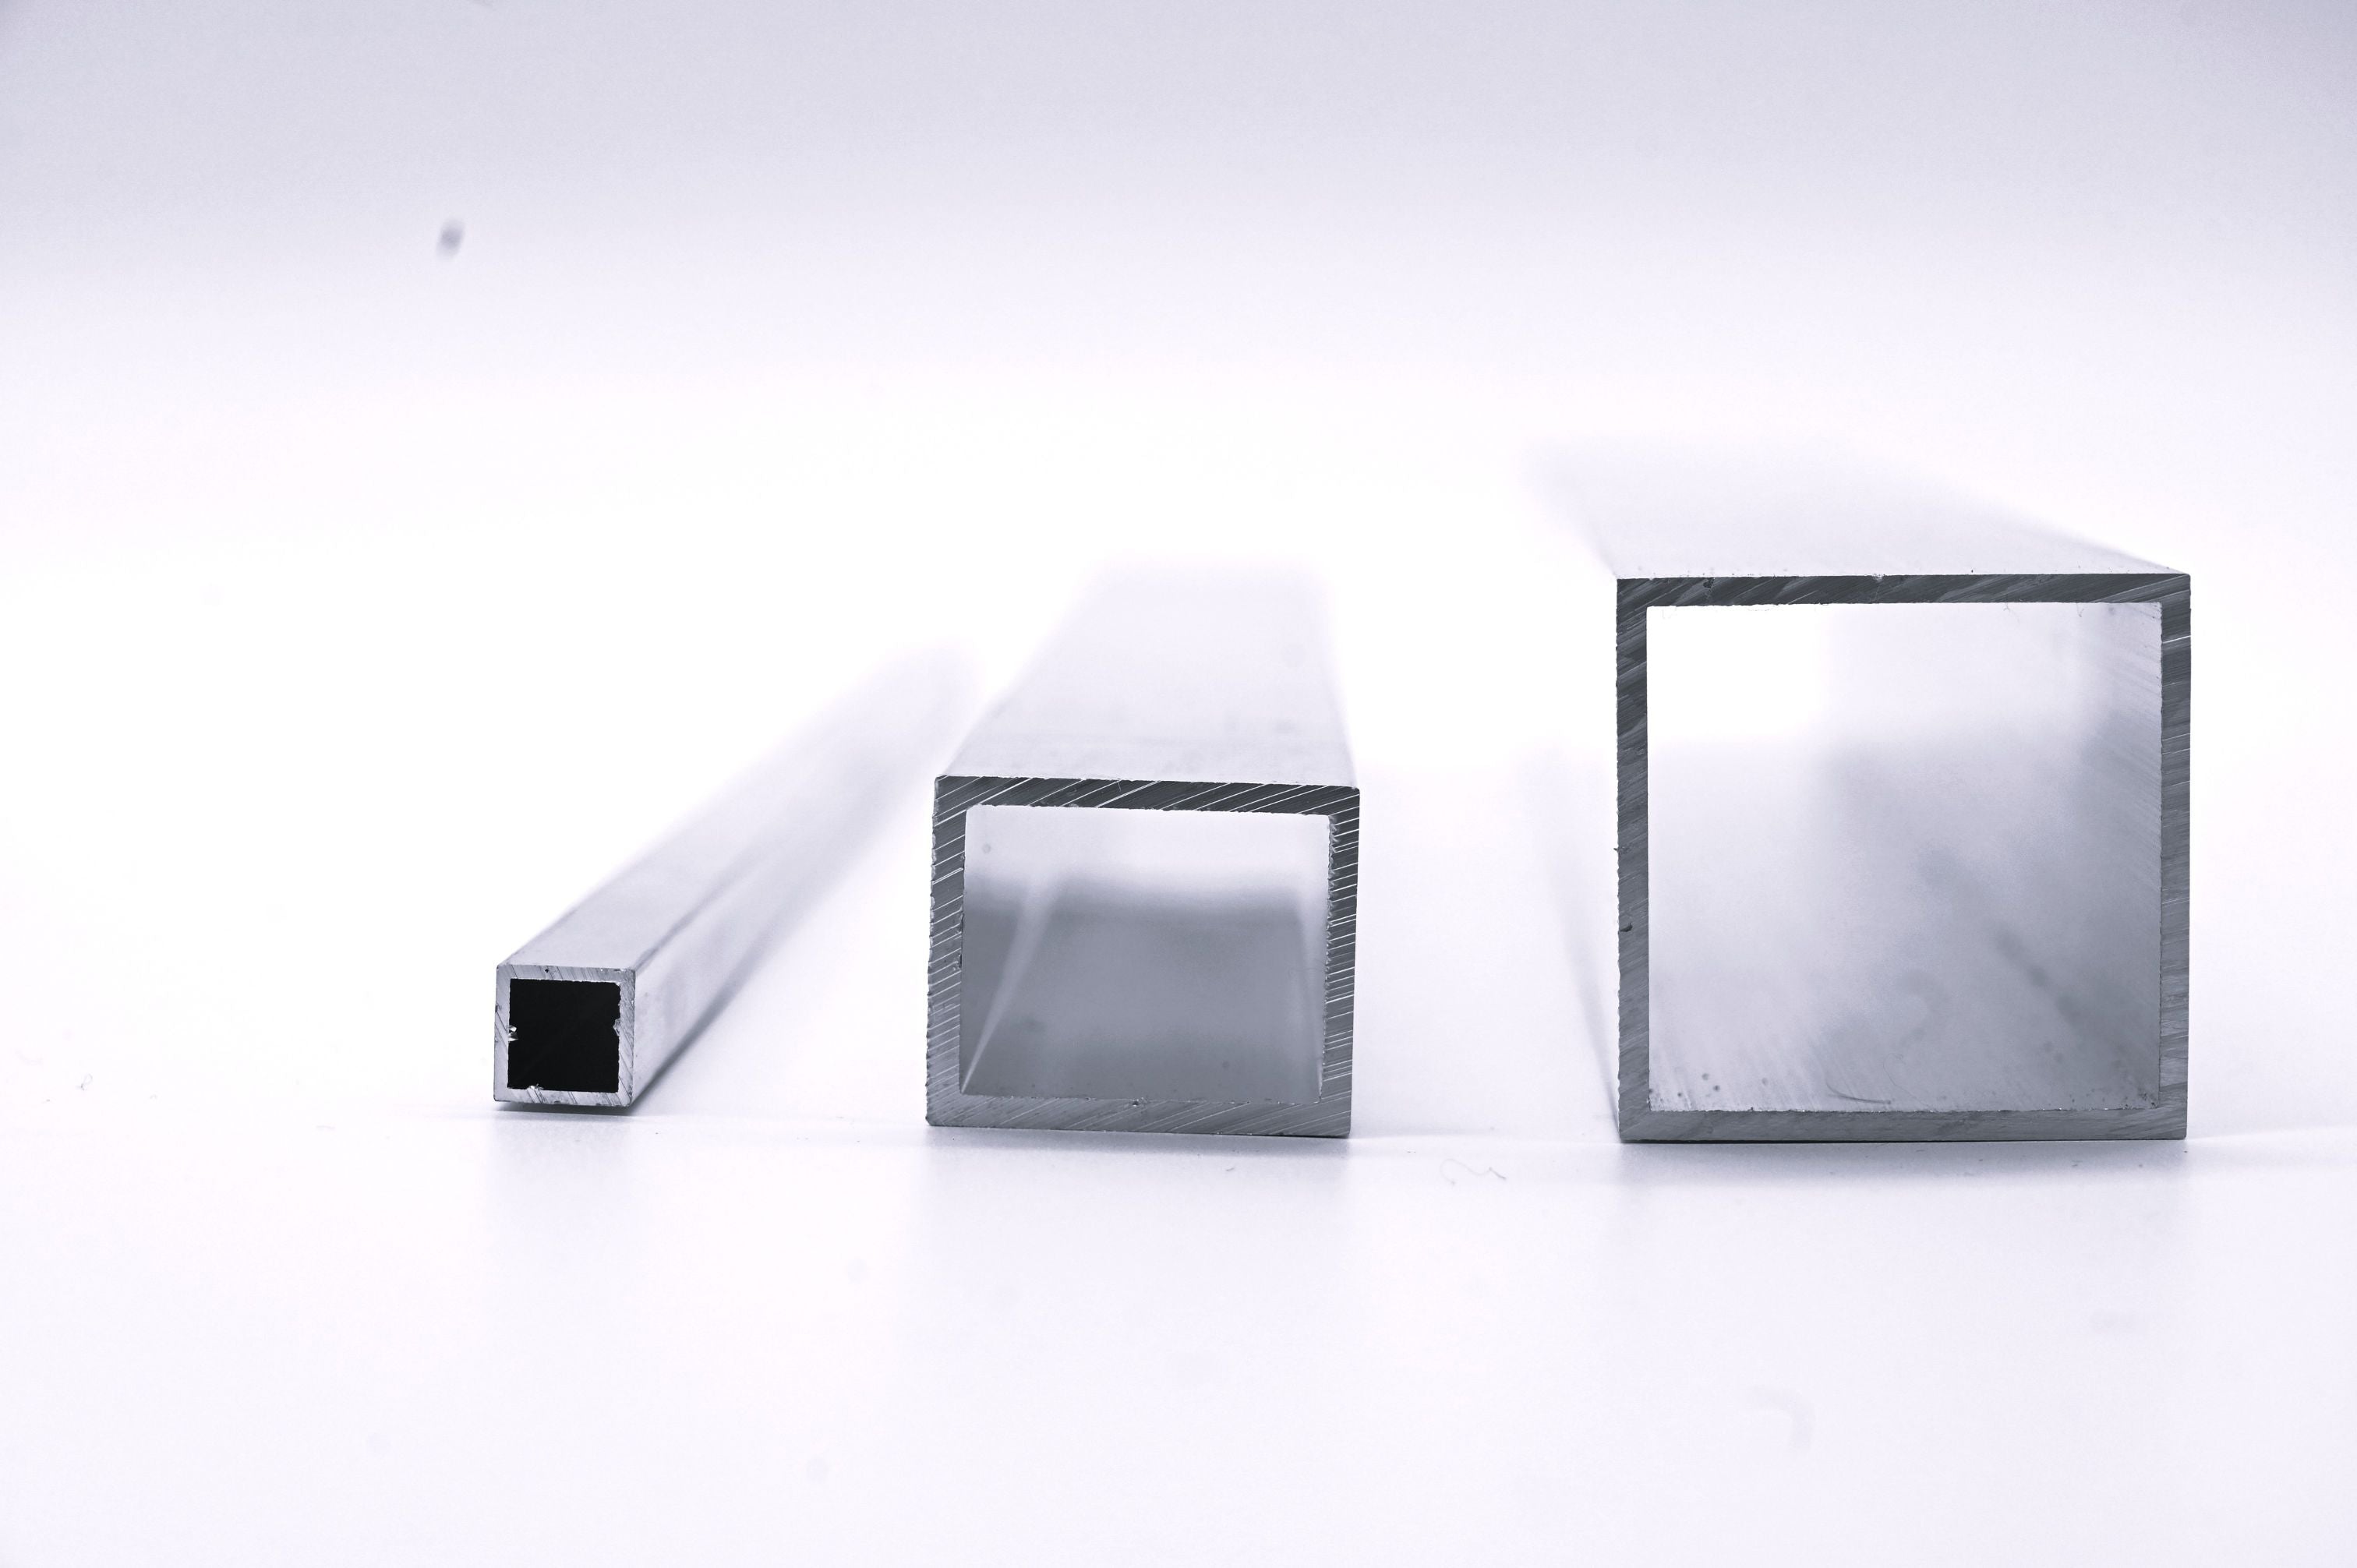 Aluminium Rundrohr, Oberfläche silberfarbig eloxiert 15 x 1,0 mm, je